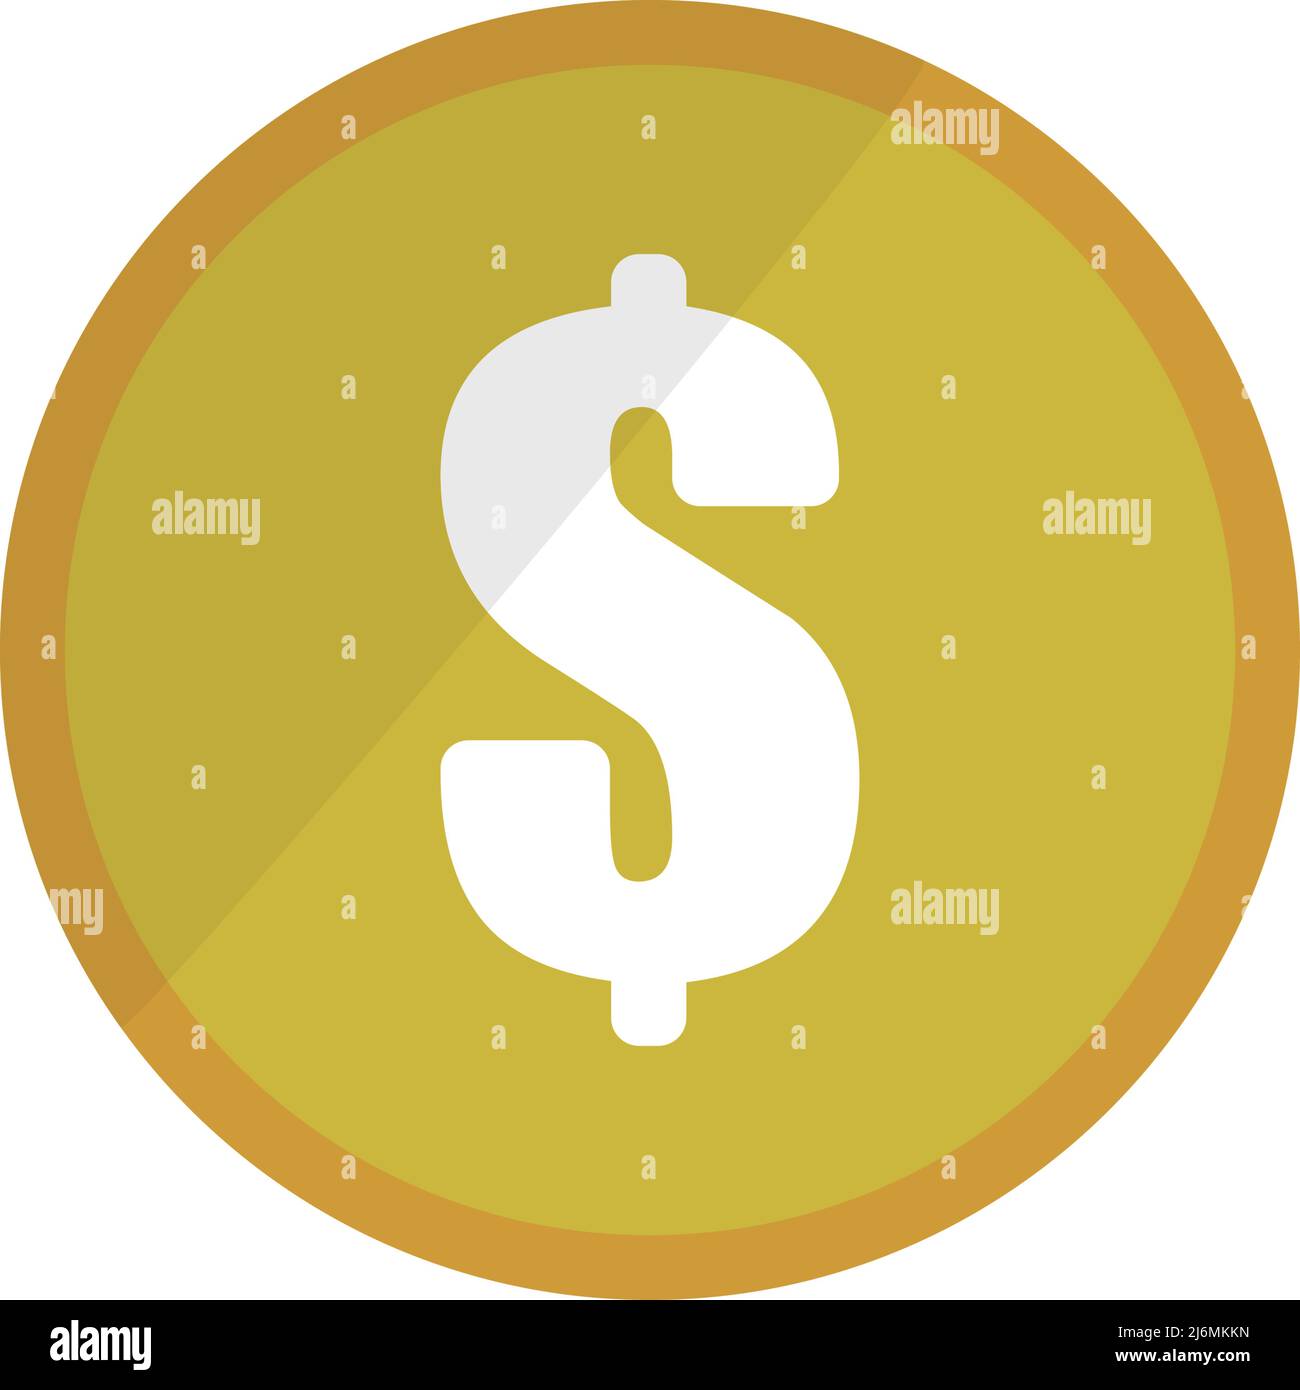 Münzsymbol für Dollar. Zahlung und Einsparungen. Amerikanische Währung. Vektoren. Bearbeitbarer Vektor. Stock Vektor